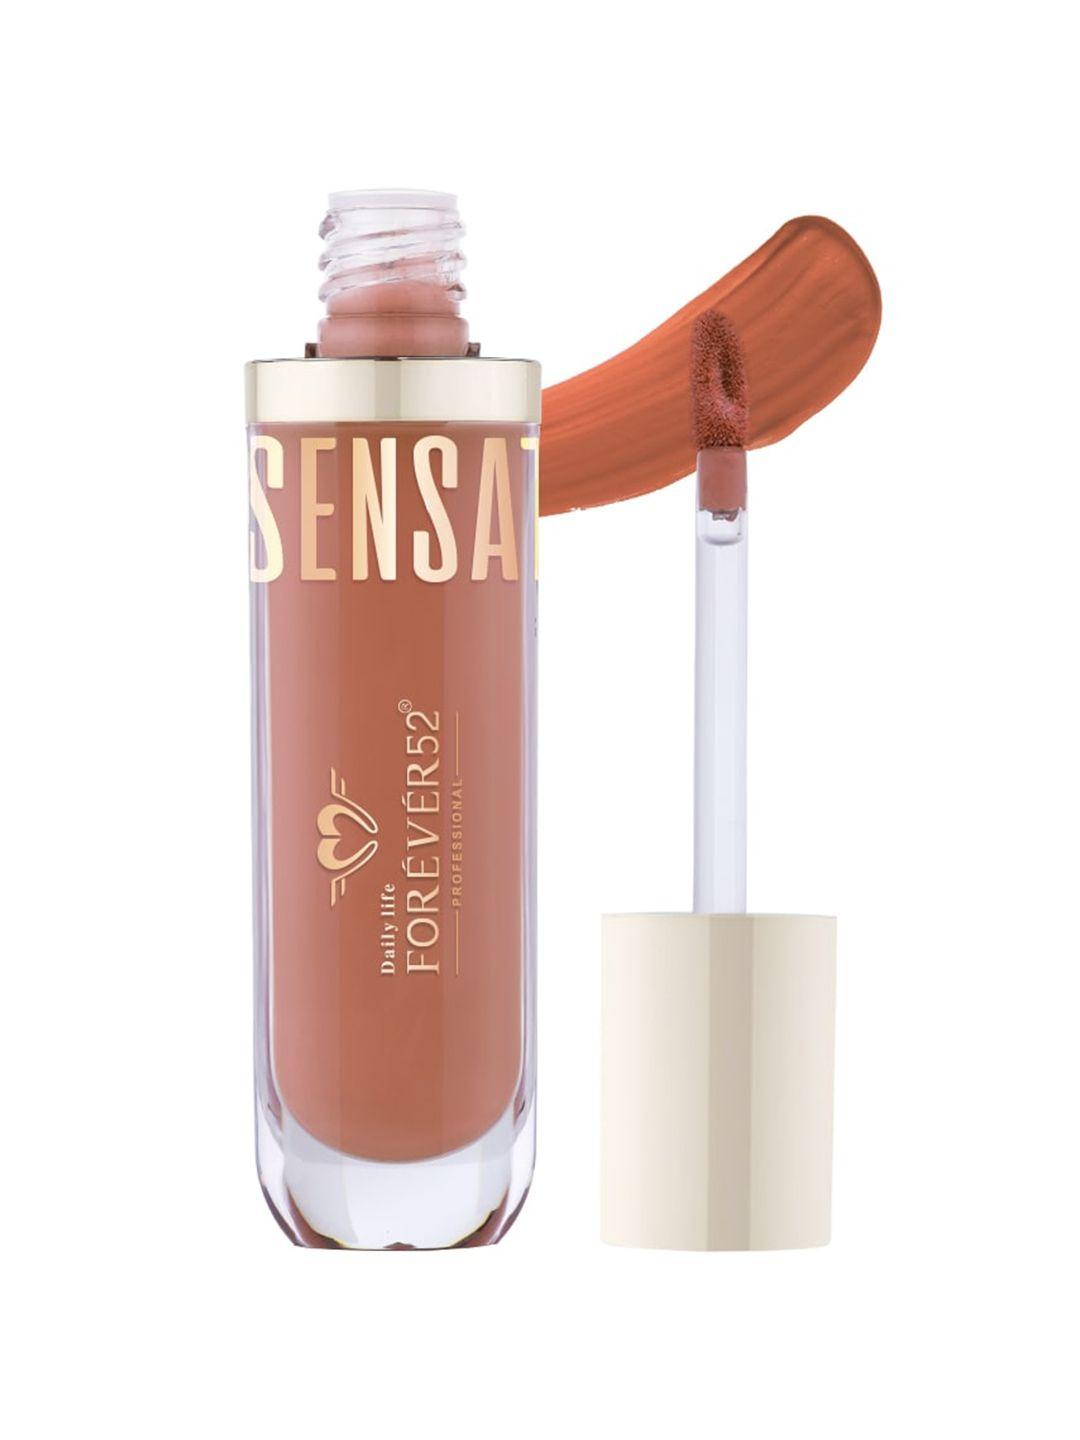 daily life forever52 sensational long lasting liquid lipstick 6ml - desert dune 008